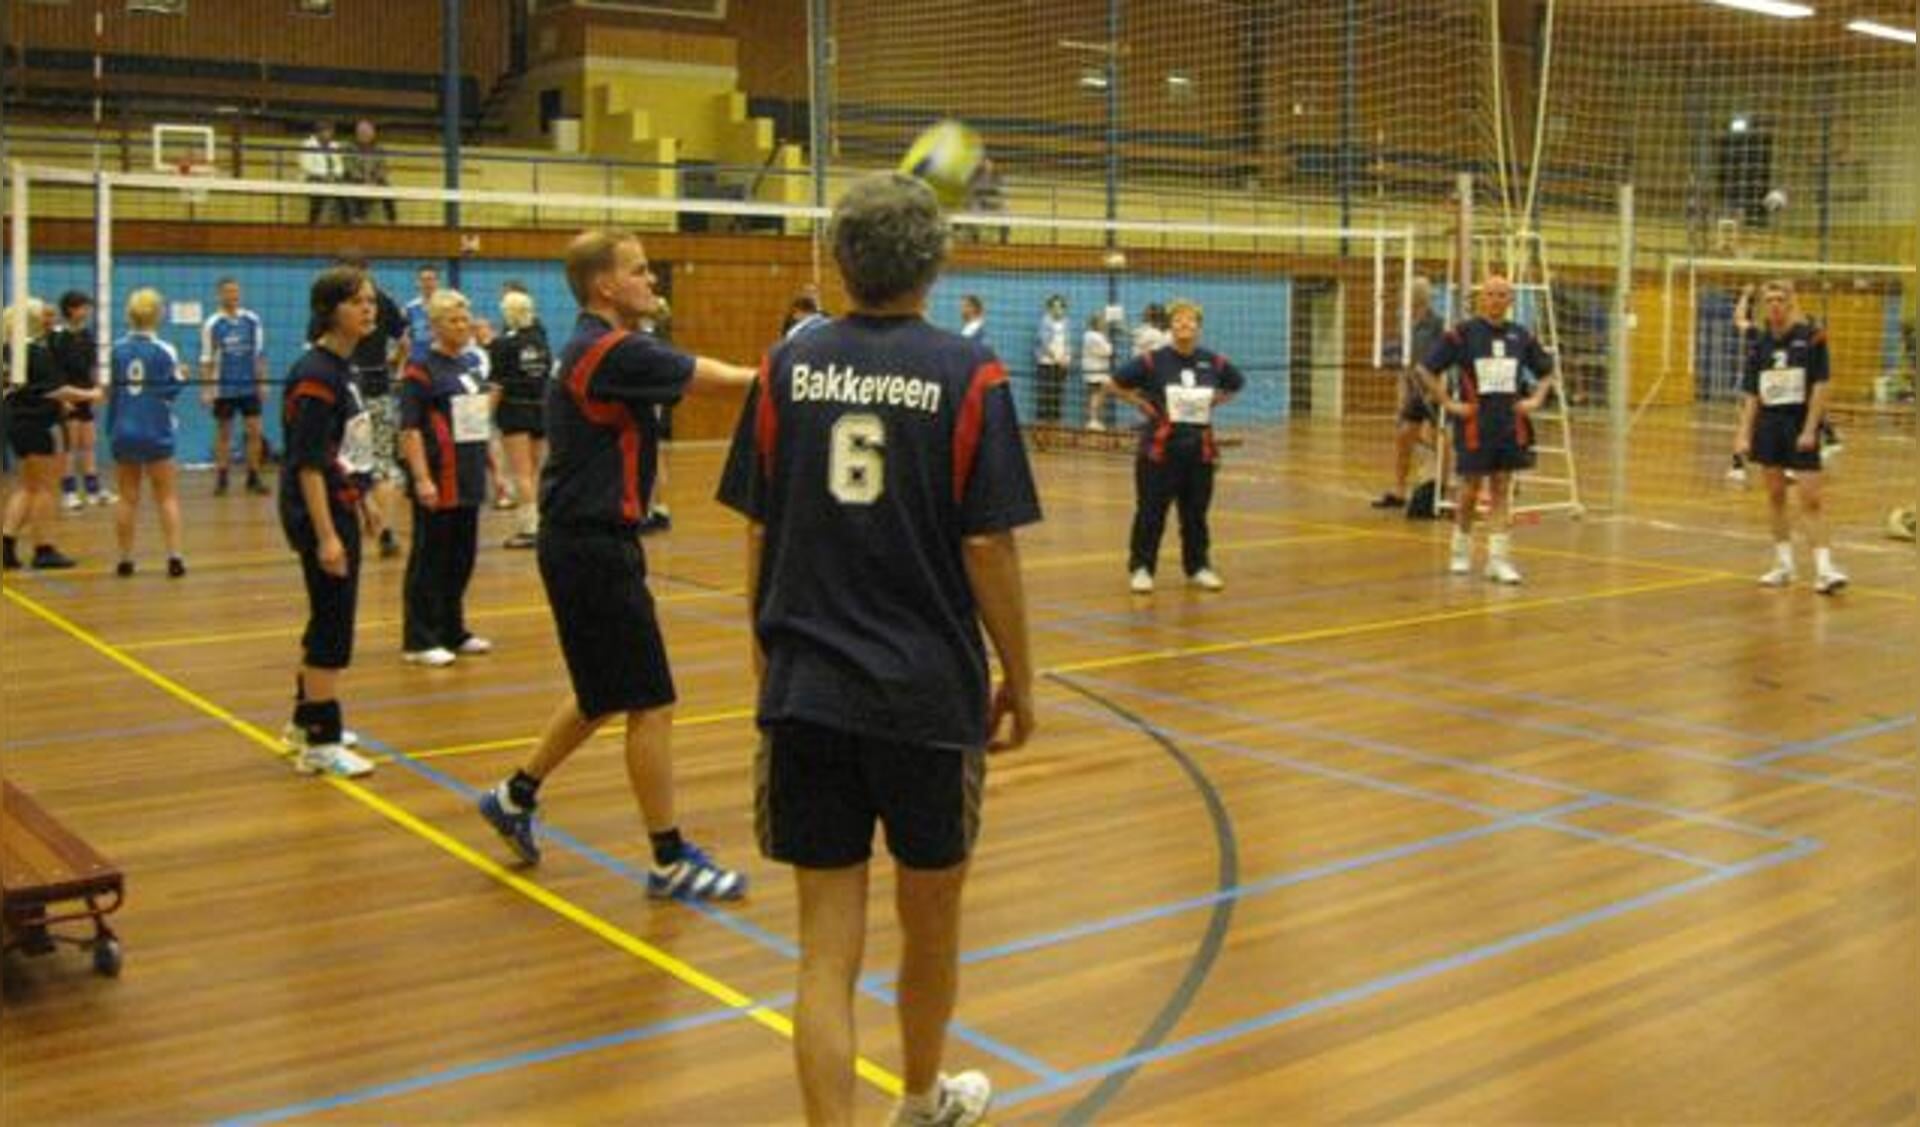 De volleyballers van Bakkeveen krijgen hun geld terug van de gemeente Opsterland voor de huur van hun accommodatie voor het seizoen 2020/2021.